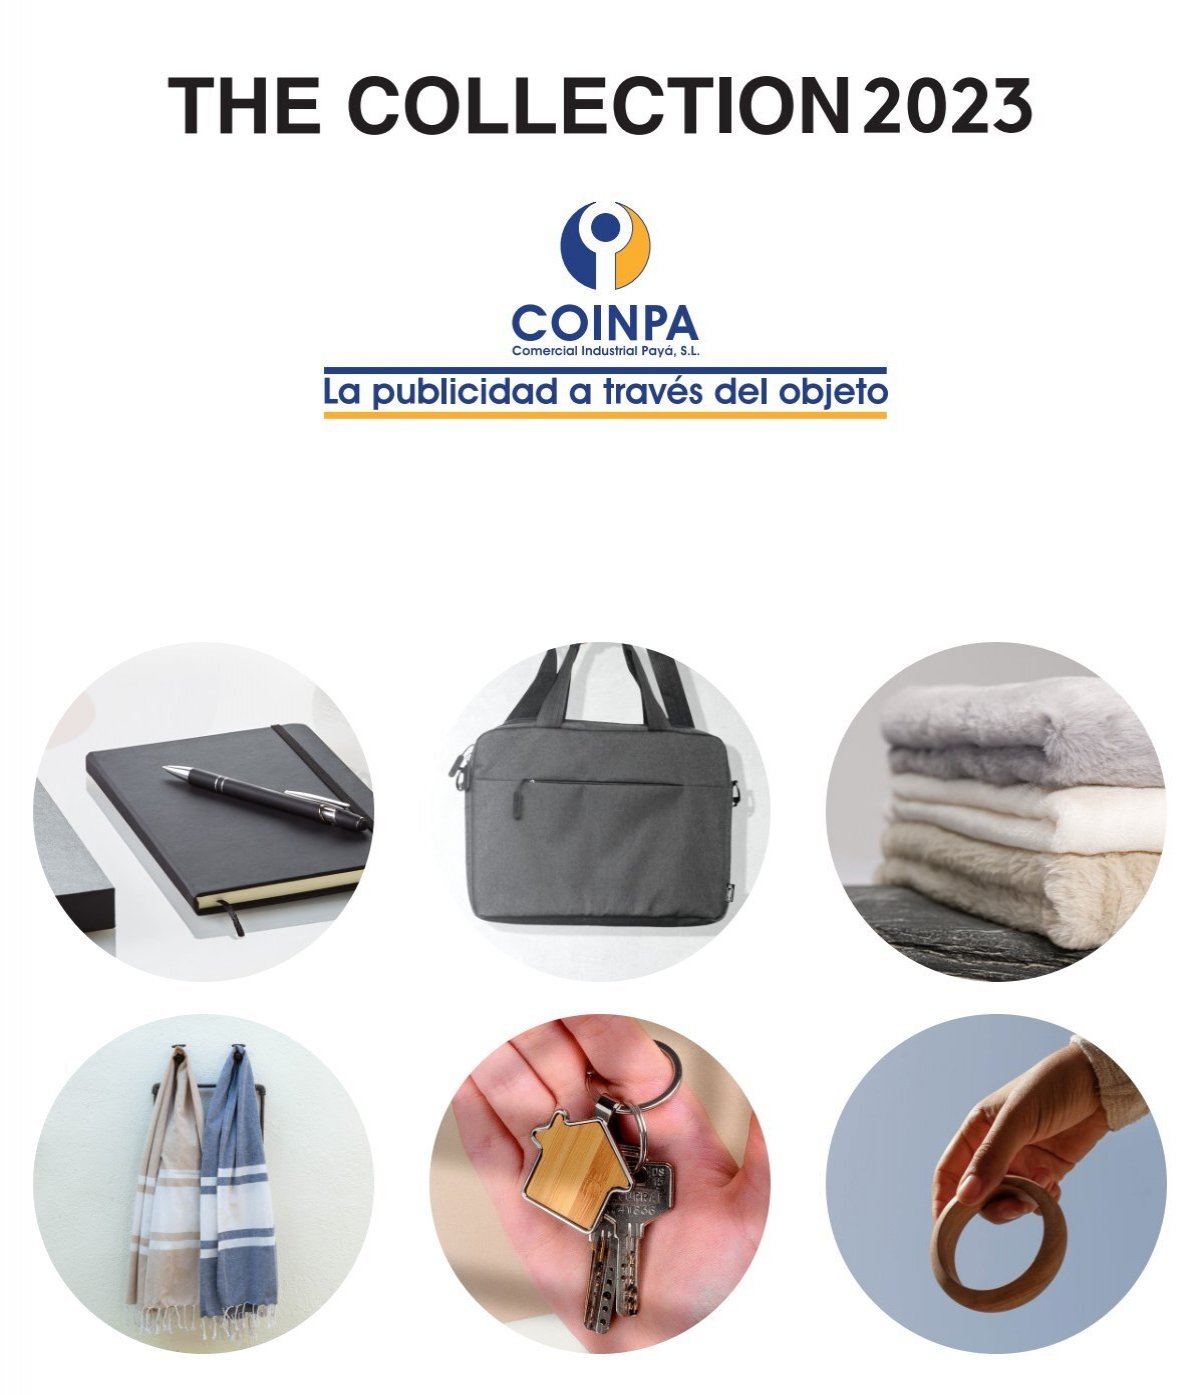 Catalogo The Collection 2023 - Coinpa